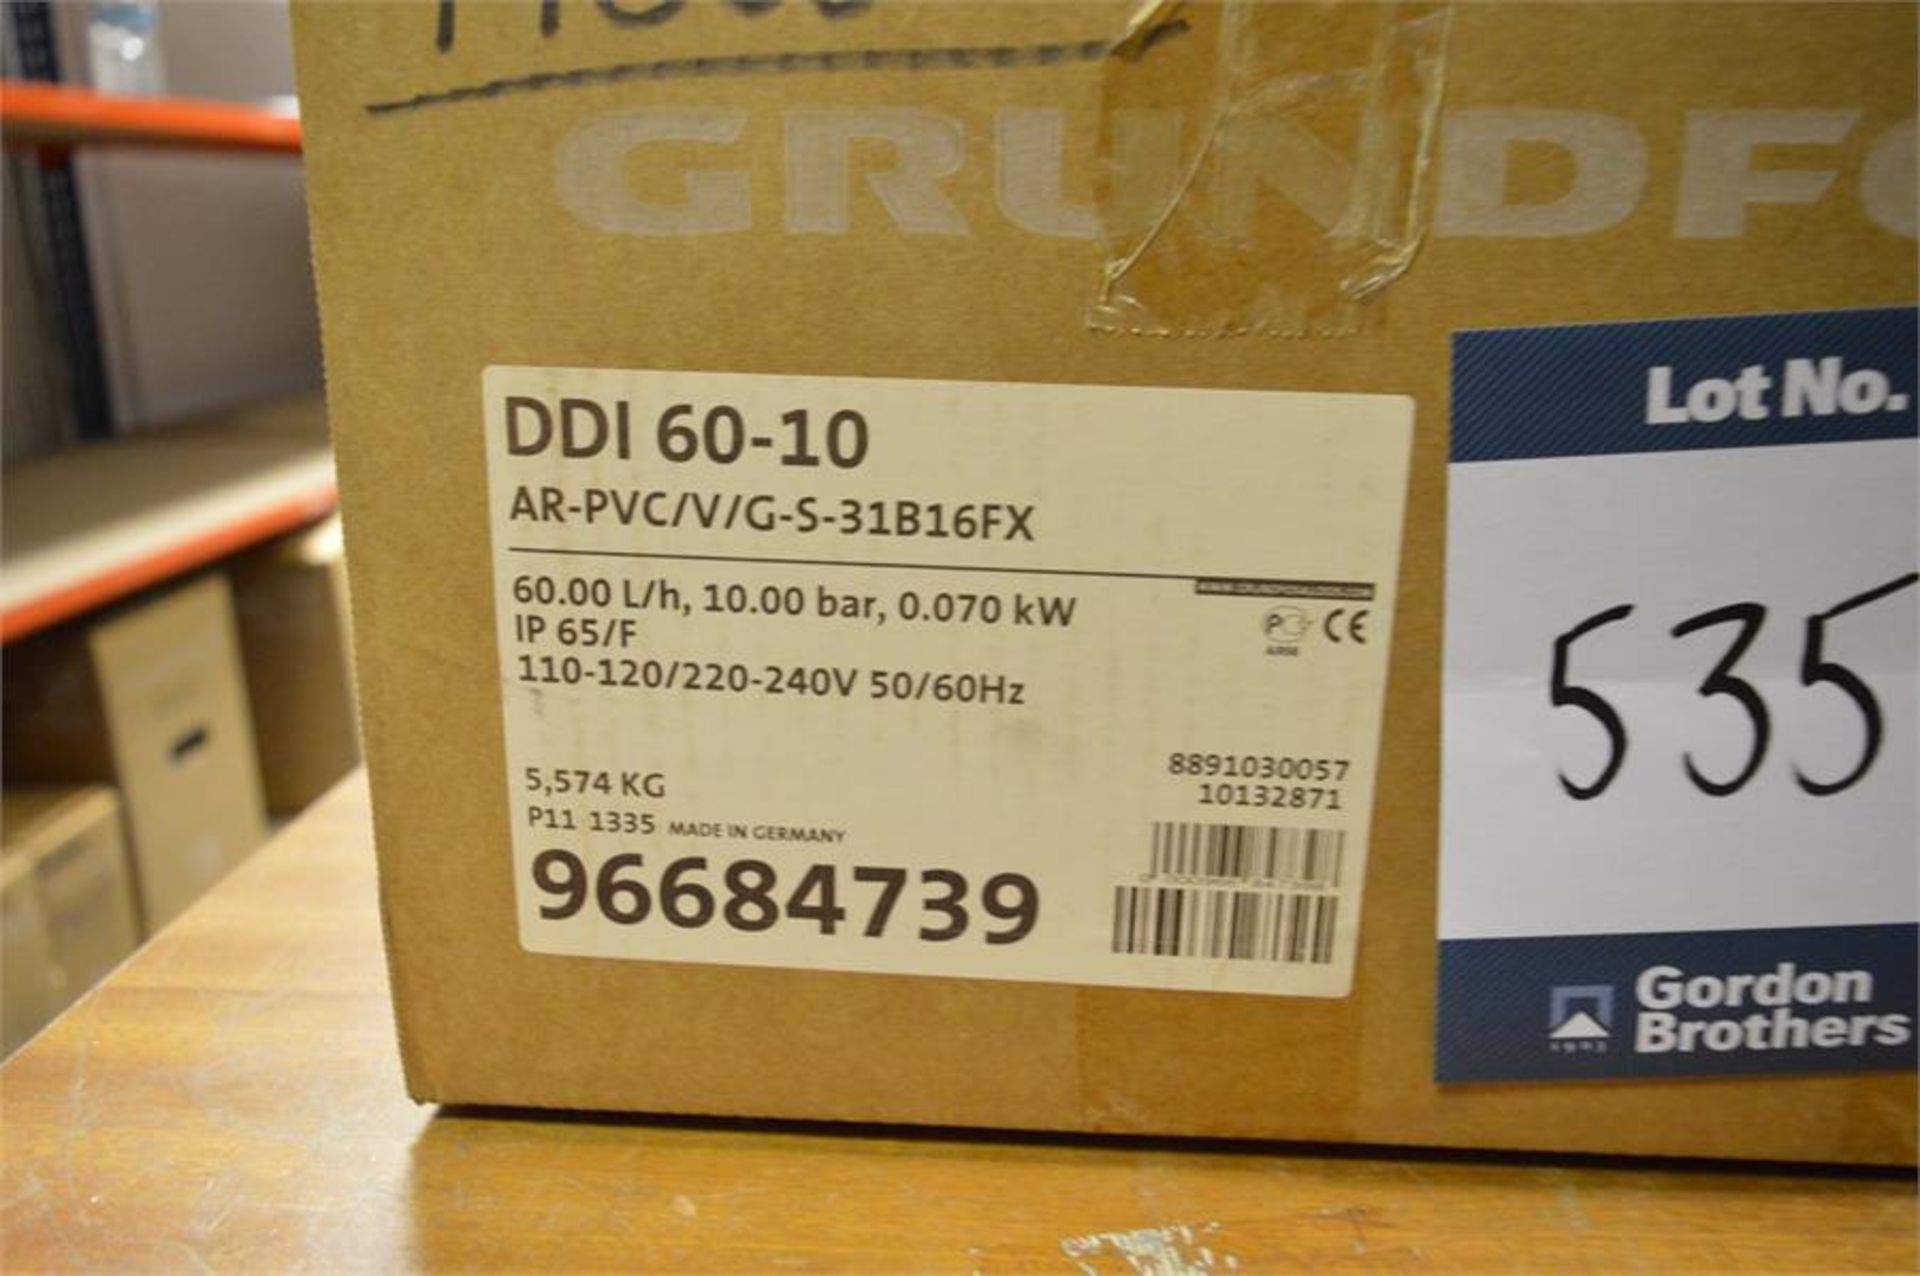 Grundfos, Type DDI-222/DDI60-10 AR-PVC/V/G-5-31 B16FX dosing pump, capacity 60 L/H/10 bar (boxed/ - Image 2 of 2